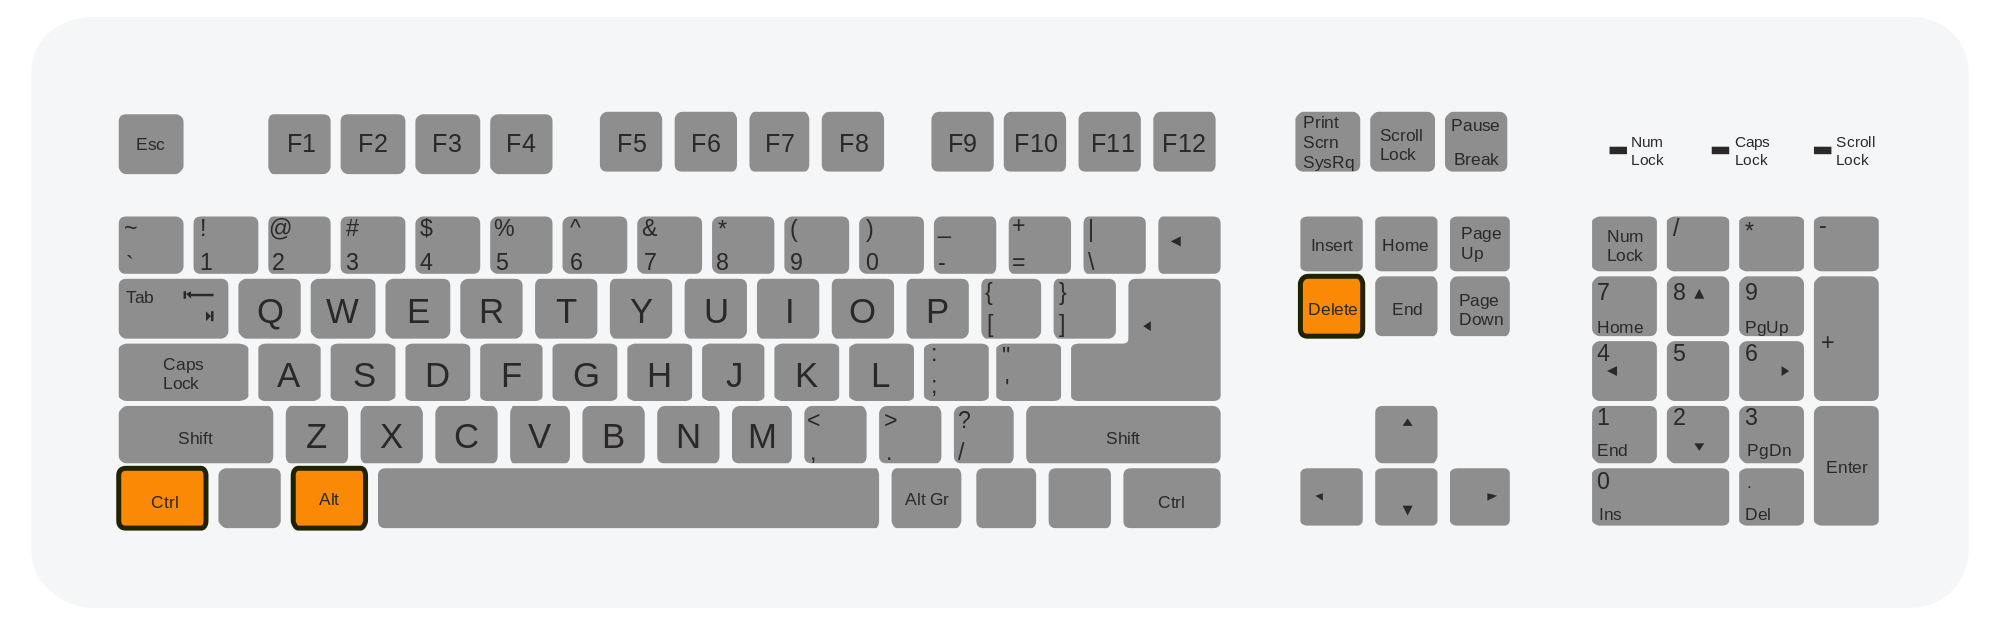 Auf dem Bild ist eine Tastatur zu sehen. 3 Tasten haben die Farbe Orange.